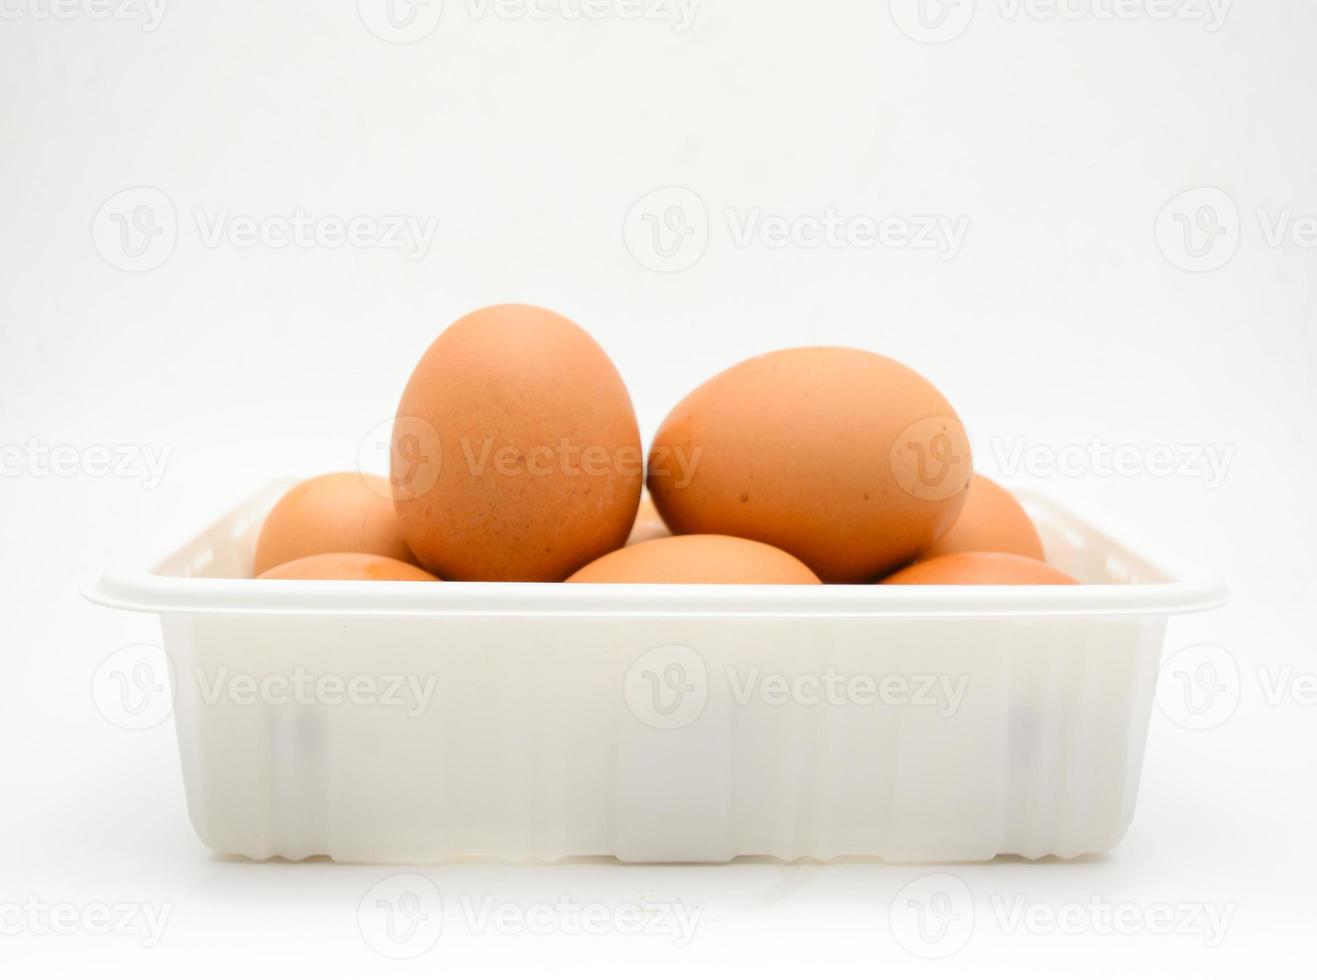 ovos, ovos marrons frescos na caixa de plástico branca foto